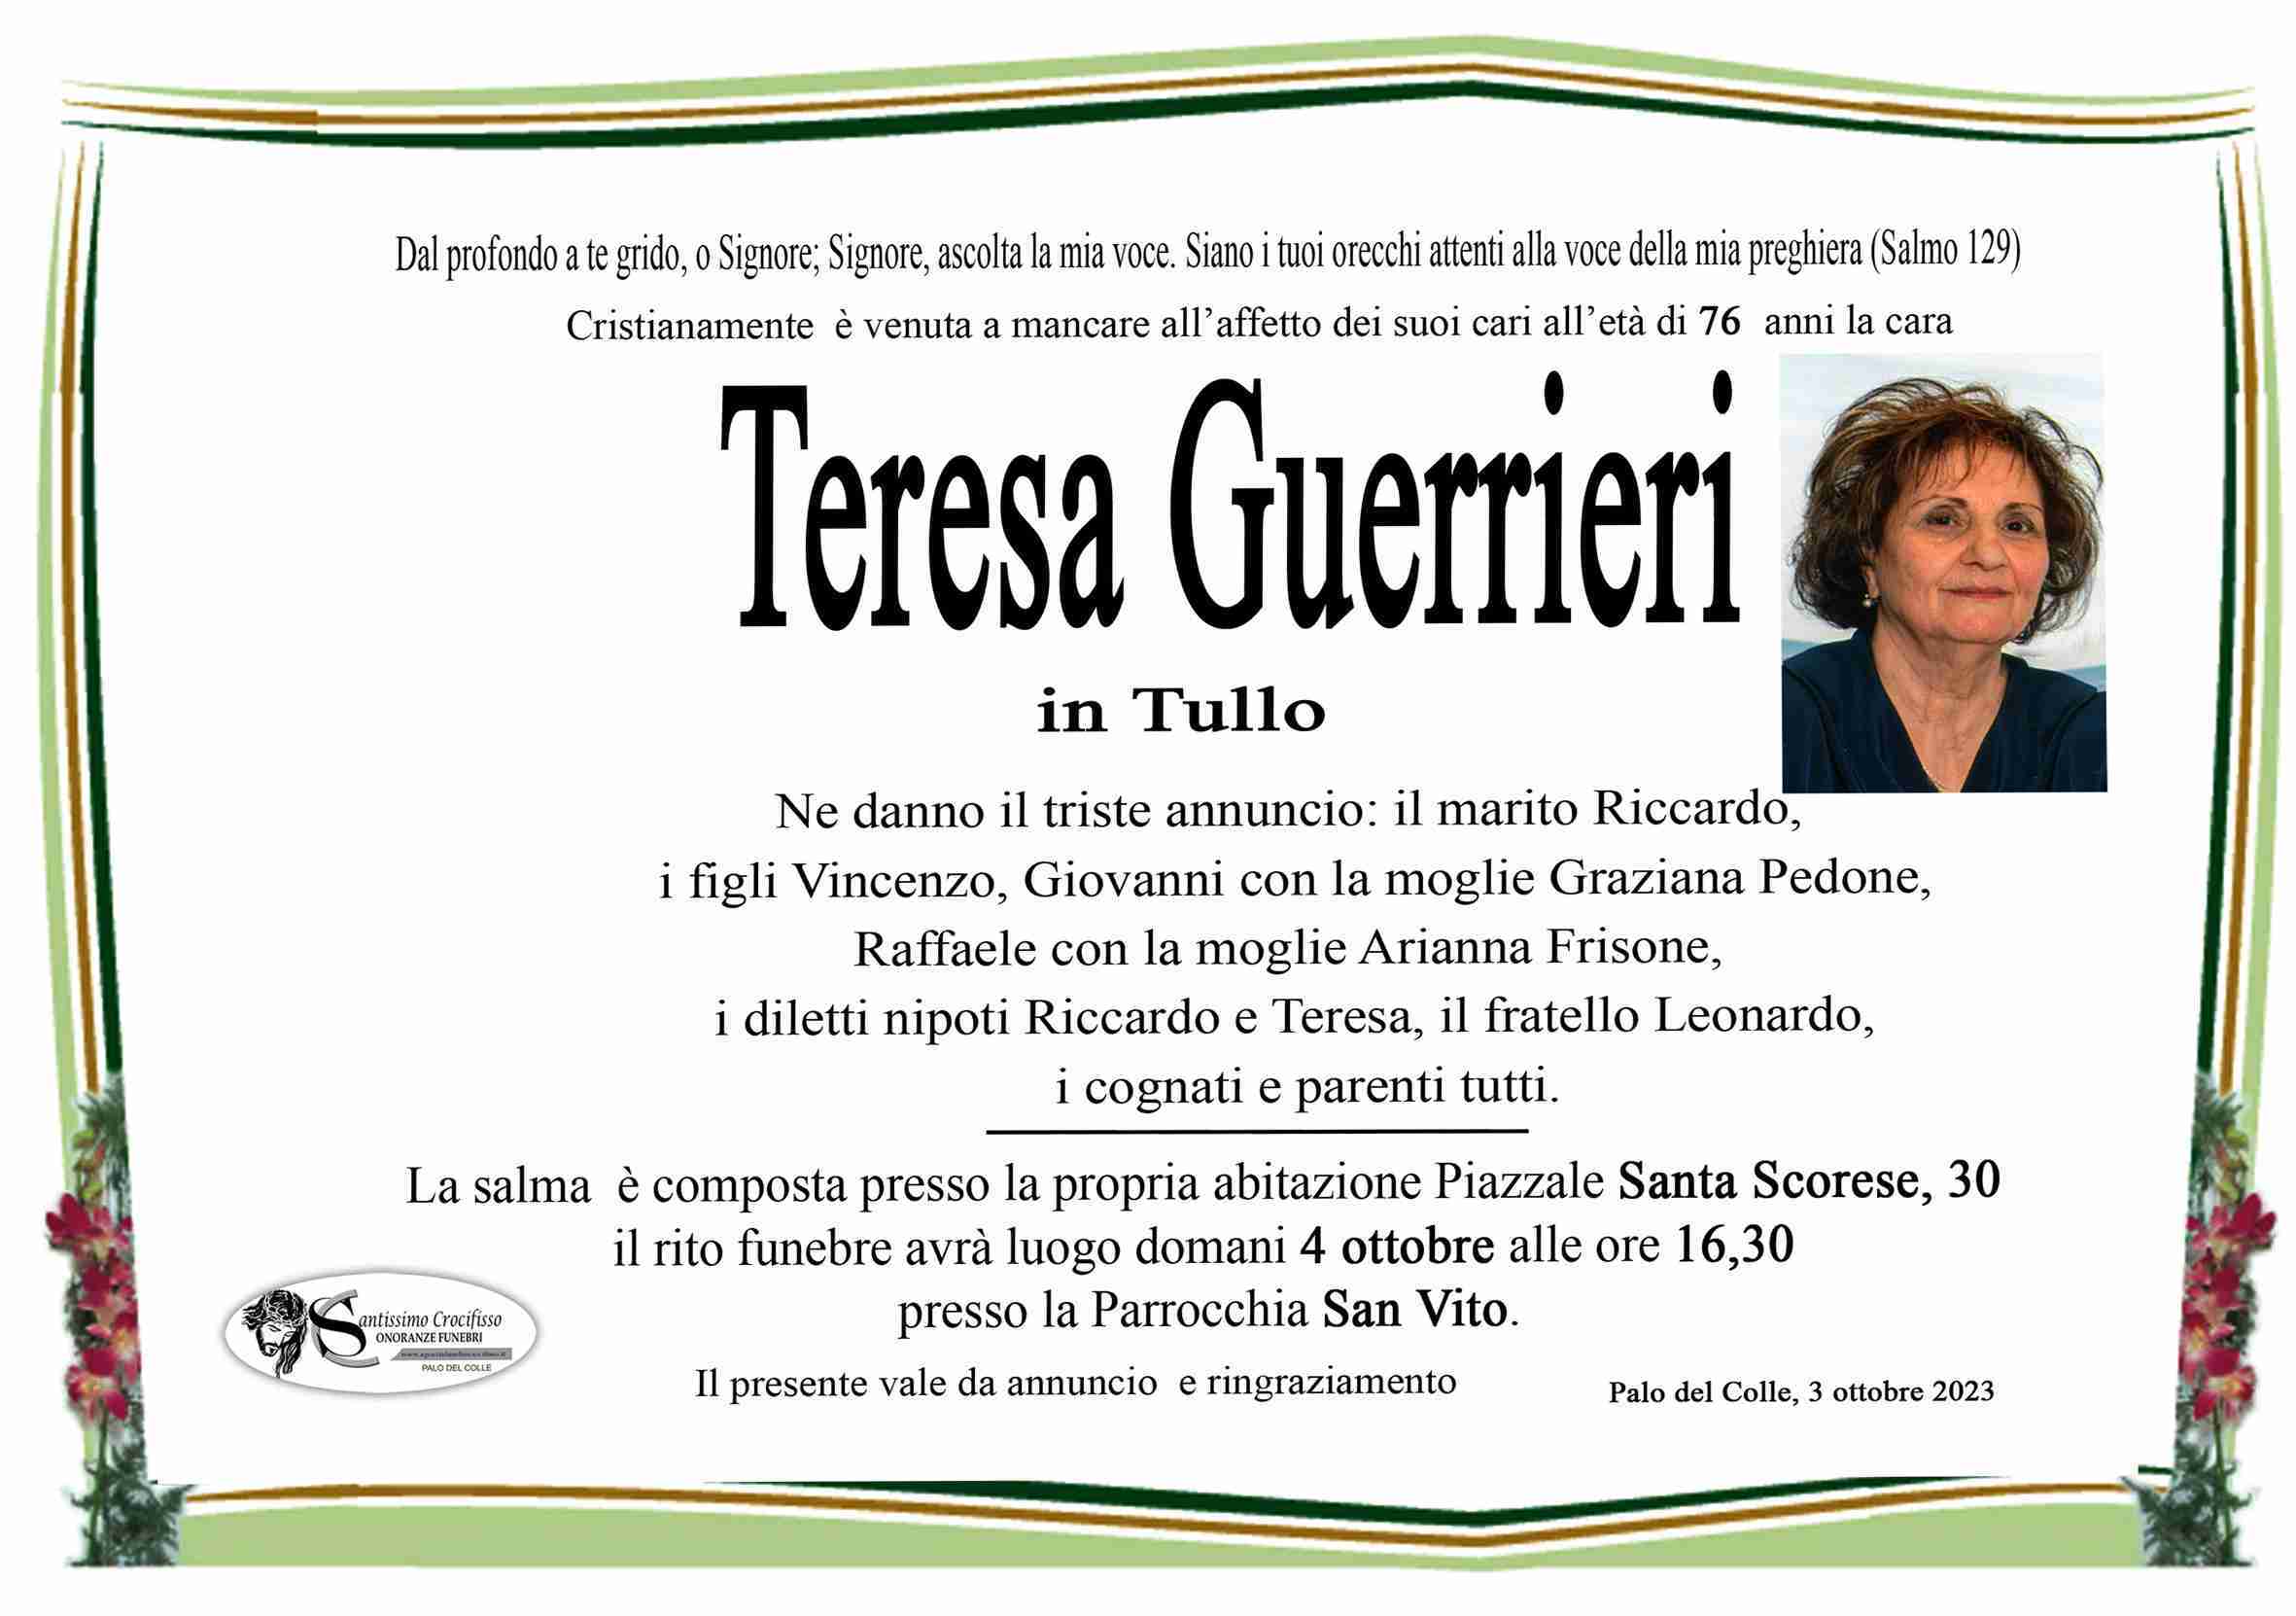 Teresa Guerrieri